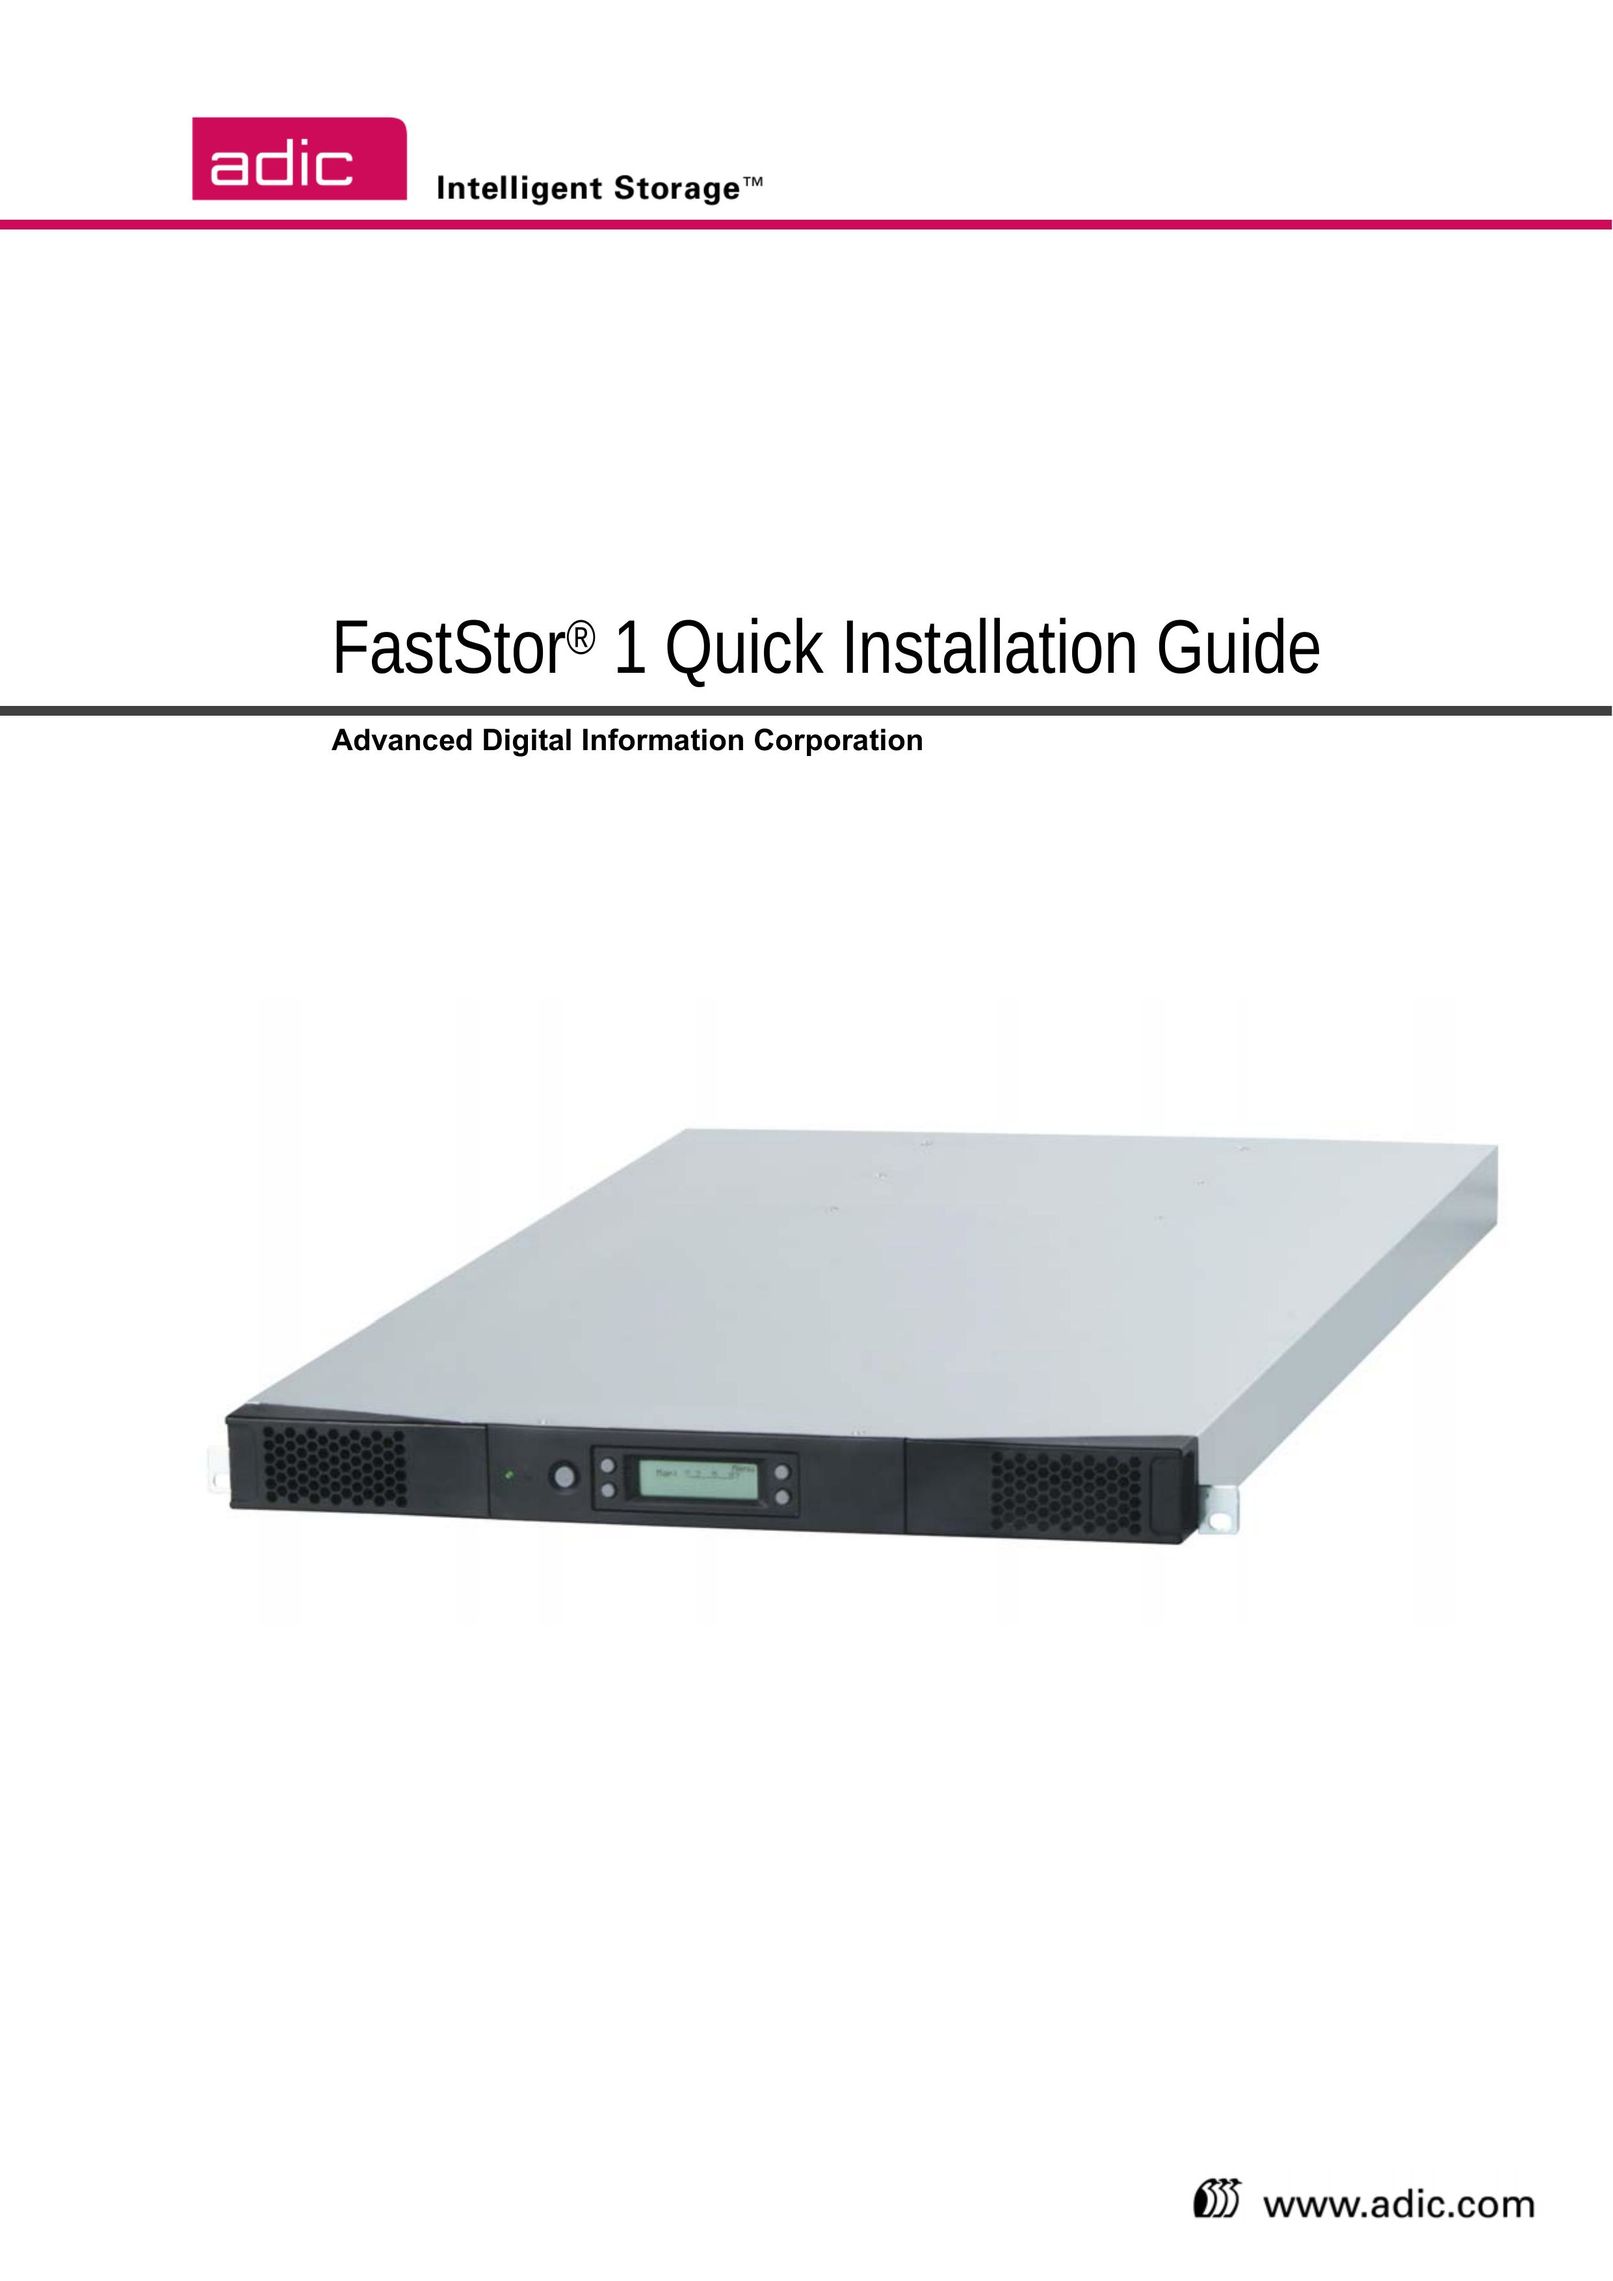 ADIC FastStor Computer Drive User Manual